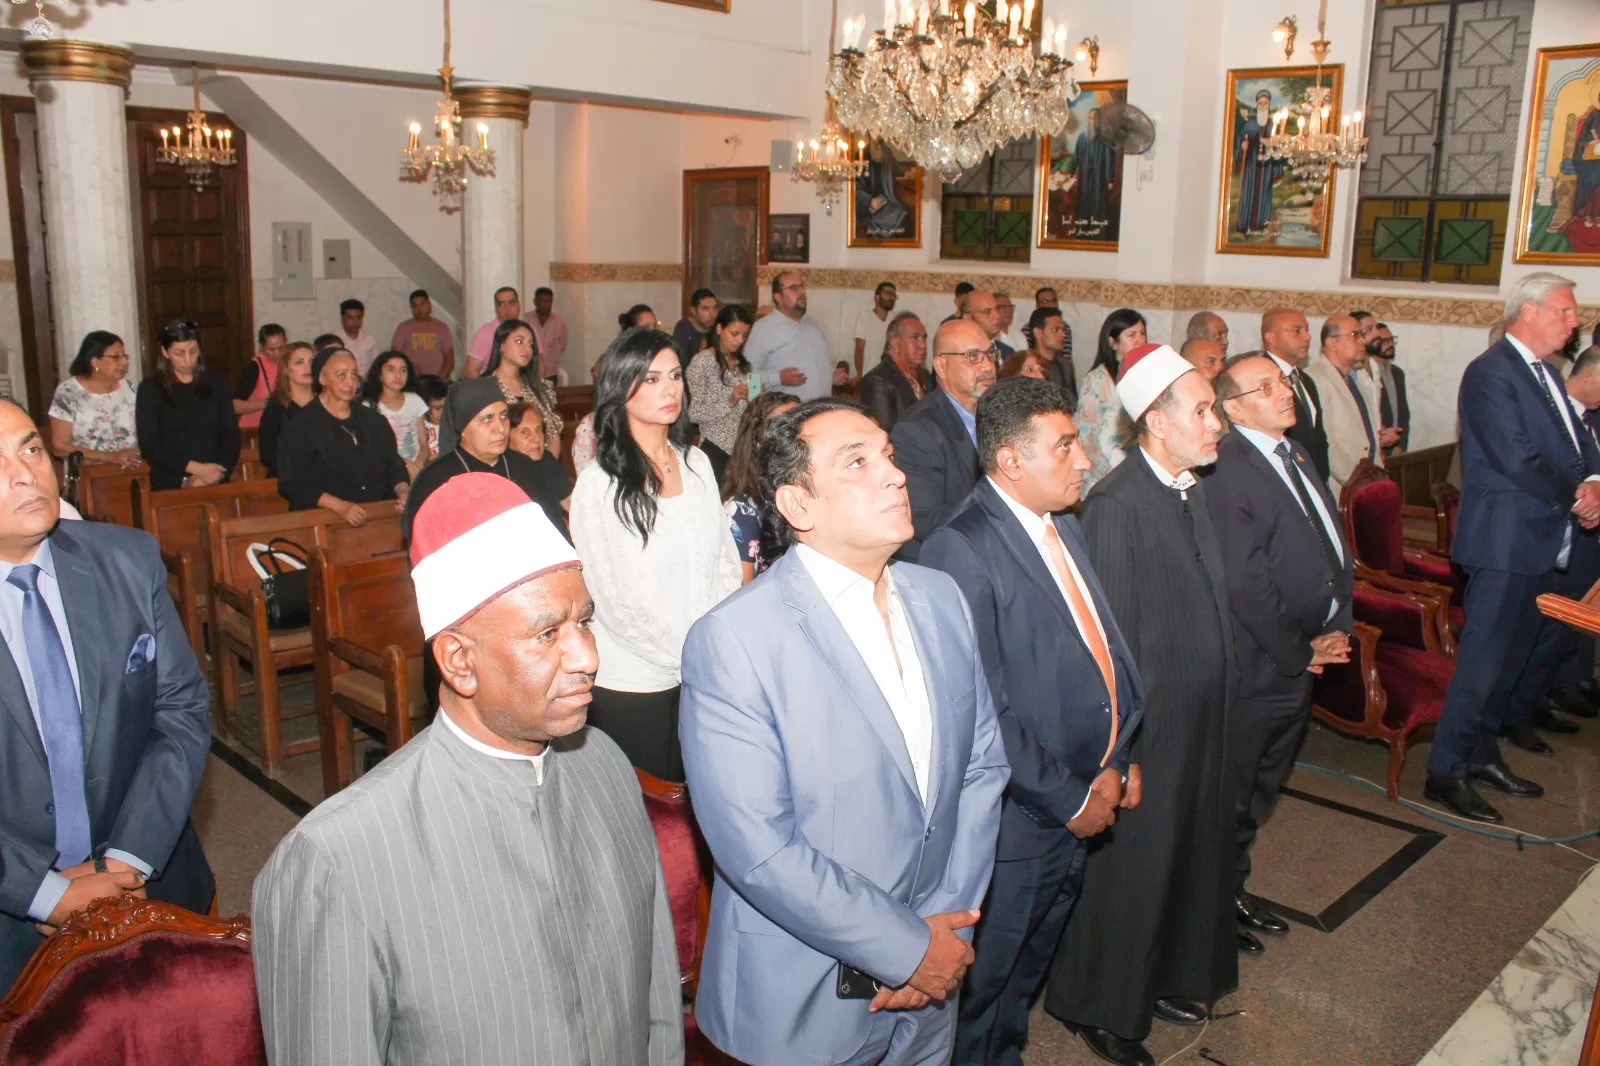 الكنيسة السريانية الارثوذكسية في مصر تحيي ذكرى شهداء ܣܰܝܦܳܐ (سيفو)